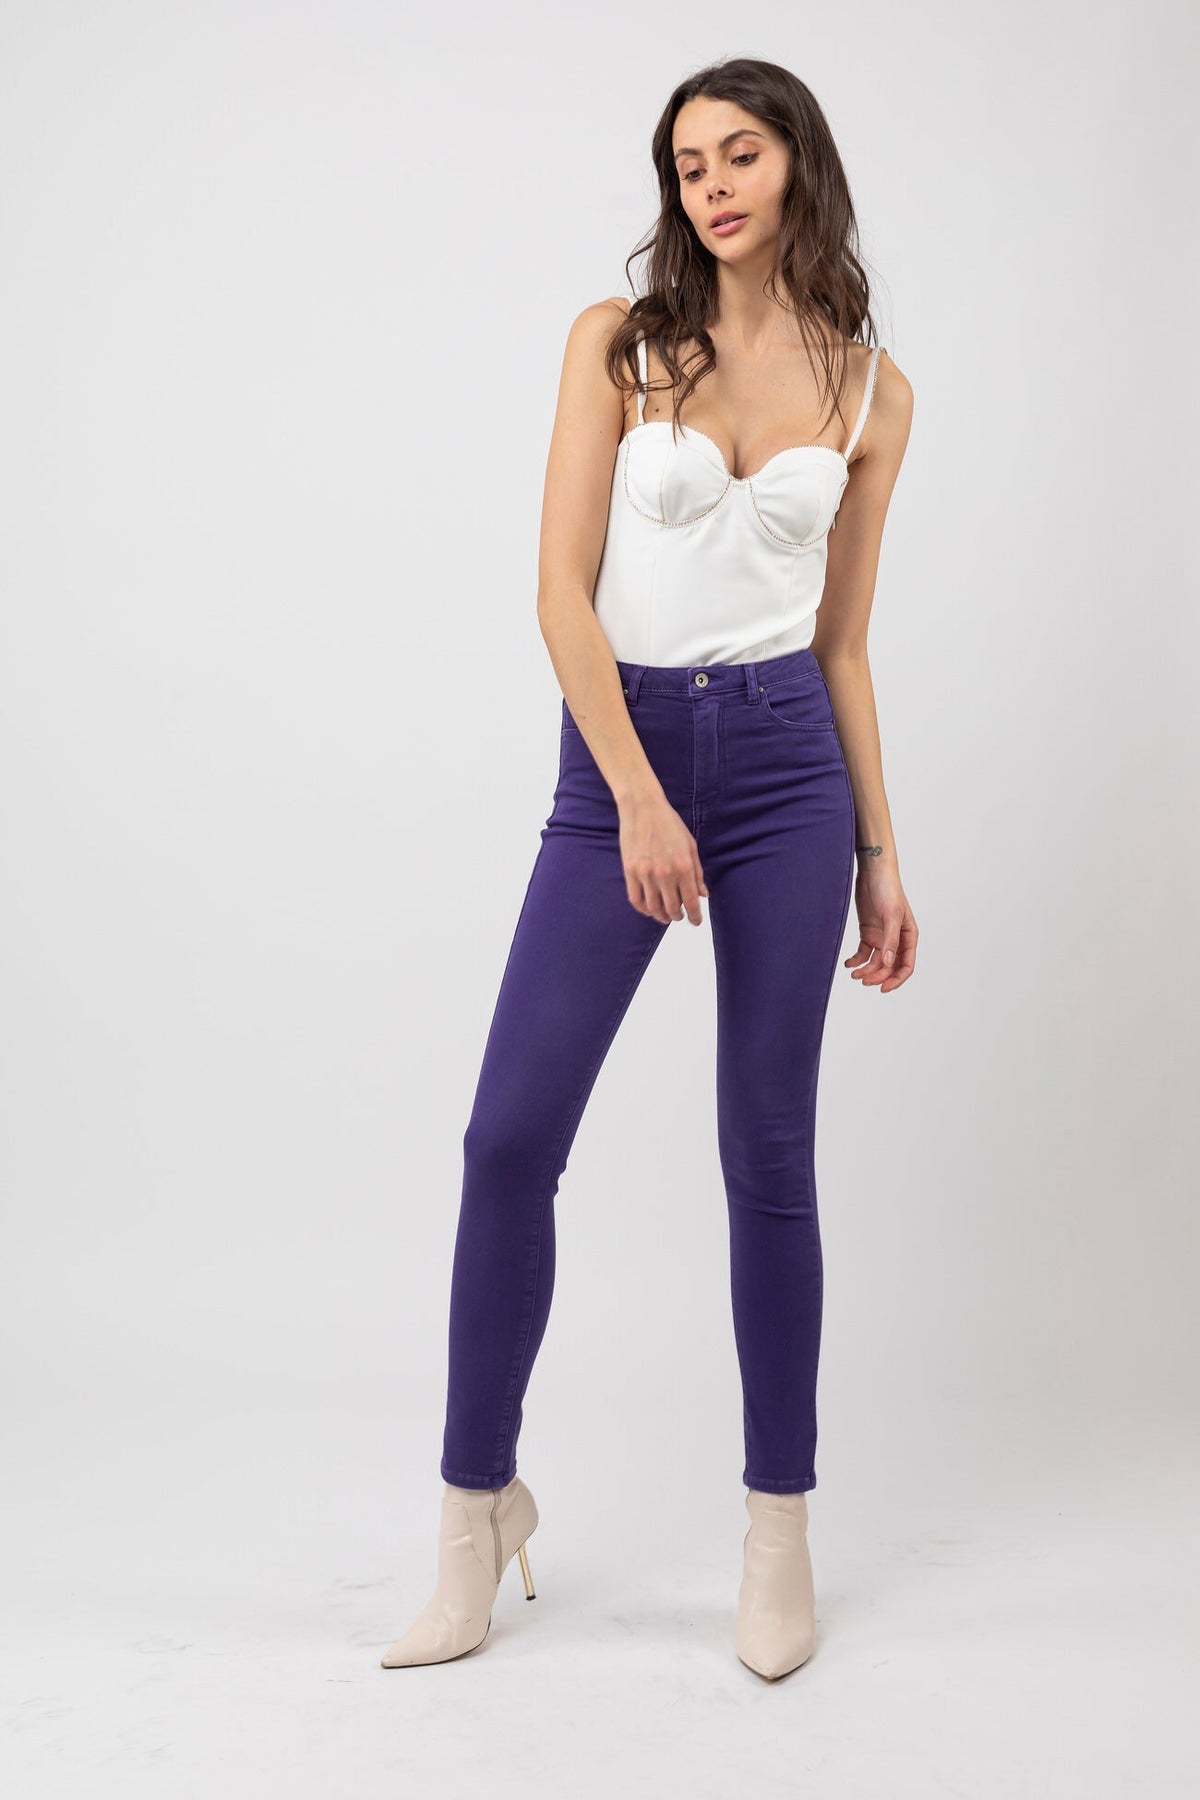 Pantalon taille haute Solaria - Purple rain